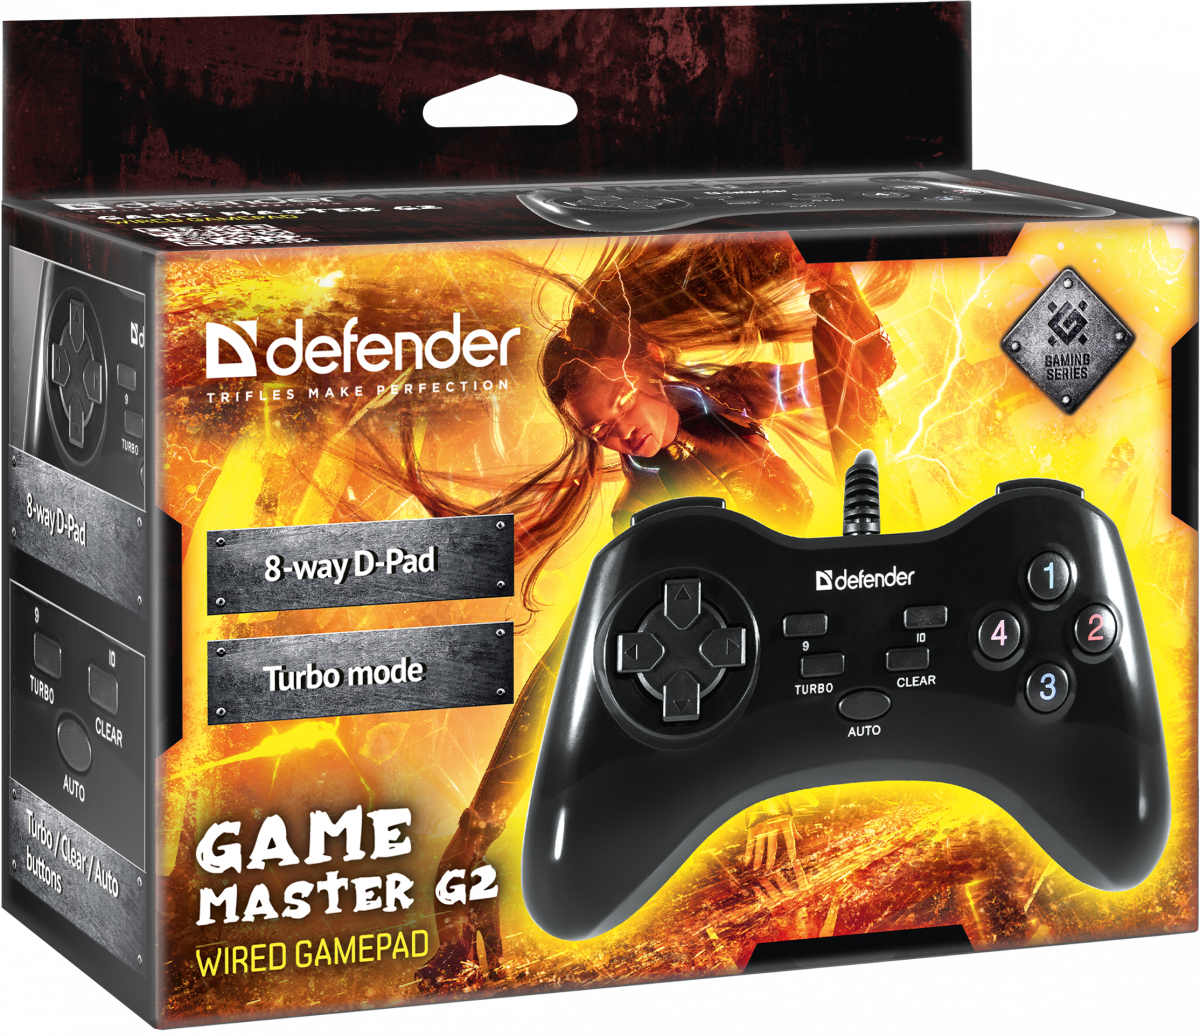 Defender game master. Геймпад Дефендер гейм мастер. Игрвойджойстик Дефендер. Джойстик Defender game Master g2. Джойстик Defender game Master g2, 13кн (64258).